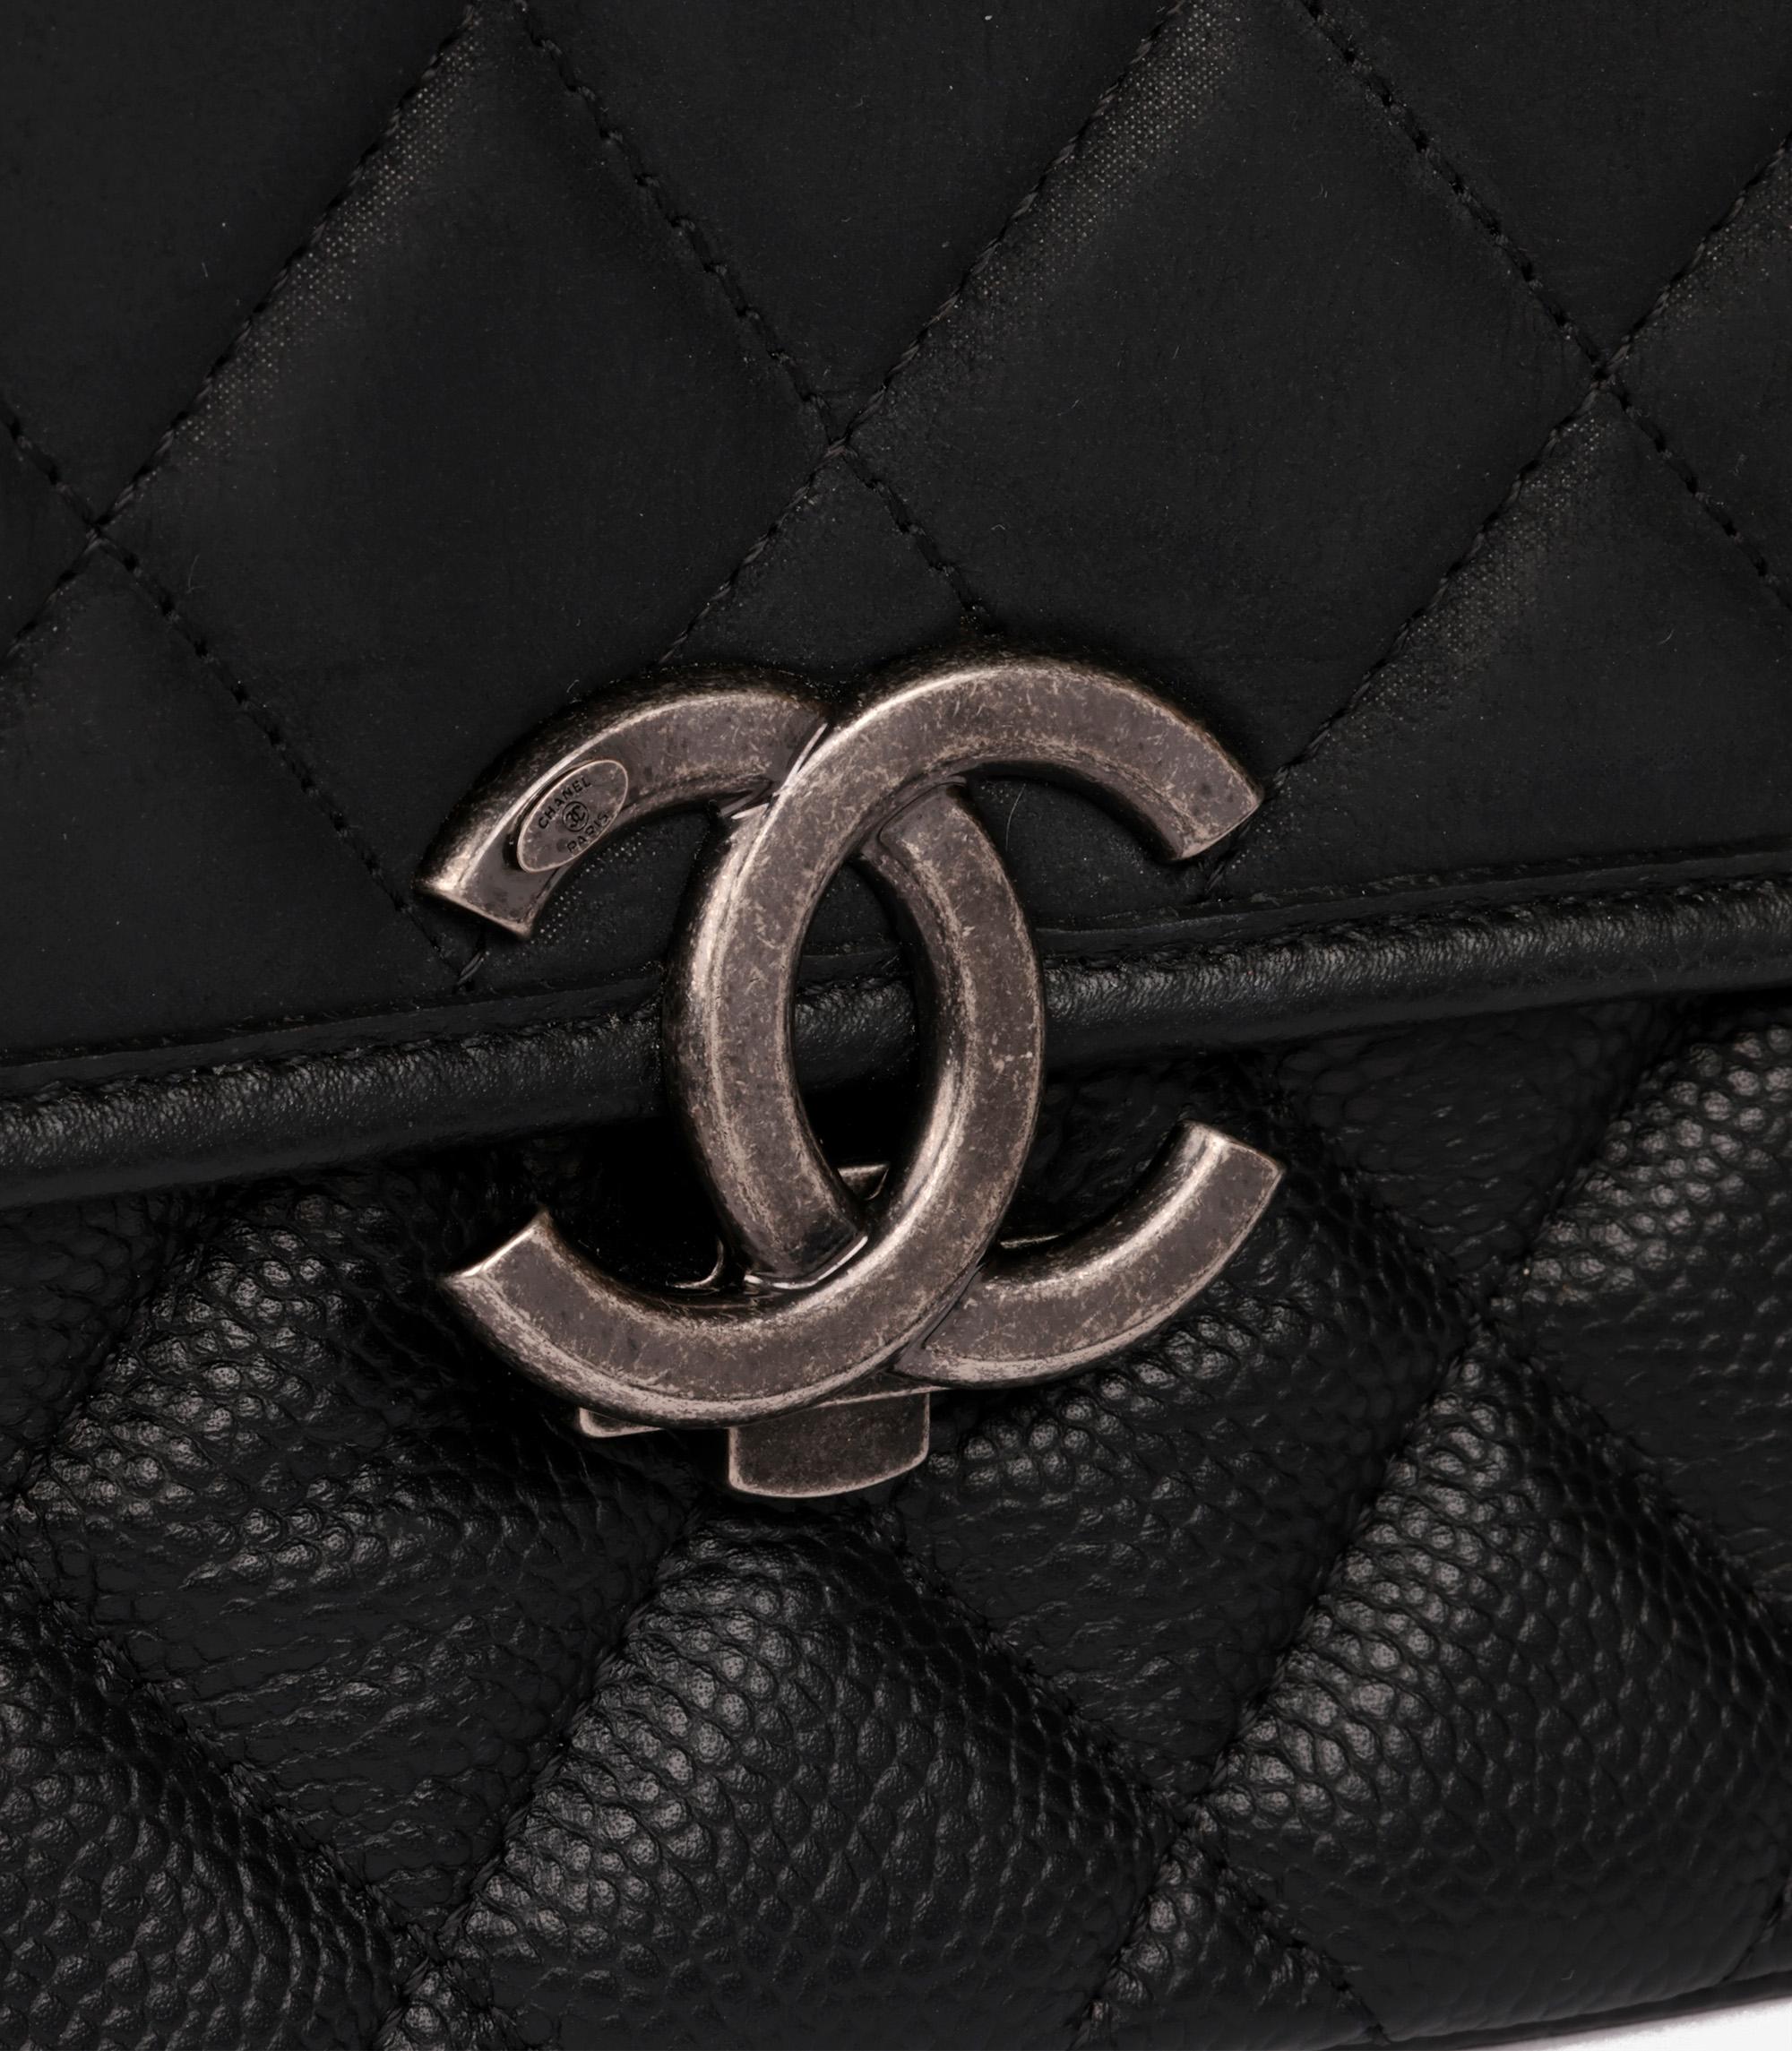 Chanel Daily Carry Messenger en cuir caviar matelassé noir et en cuir de veau irisé

Marque : Chanel
Modèle- Daily Carry Messenger
Type de produit- Porté-croisé, Porté-épaule, Poignée supérieure
Numéro de série - 23******
NO AGE - Circa